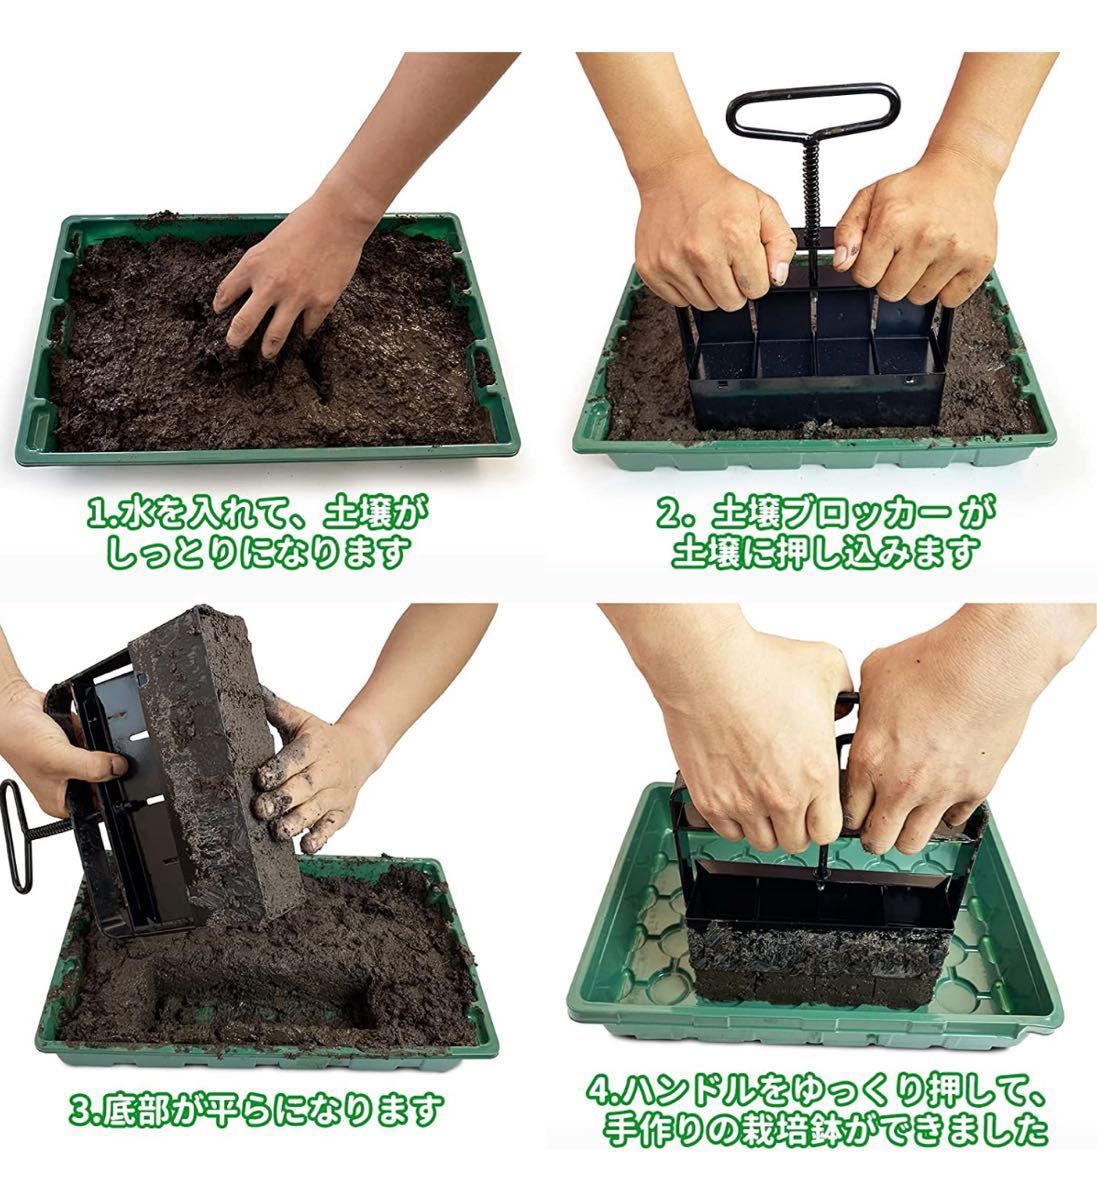 手動土壌ブロッカー 育苗用 ブロッカーメーカー 種子の育成 苗木 挿し木 温室に適用